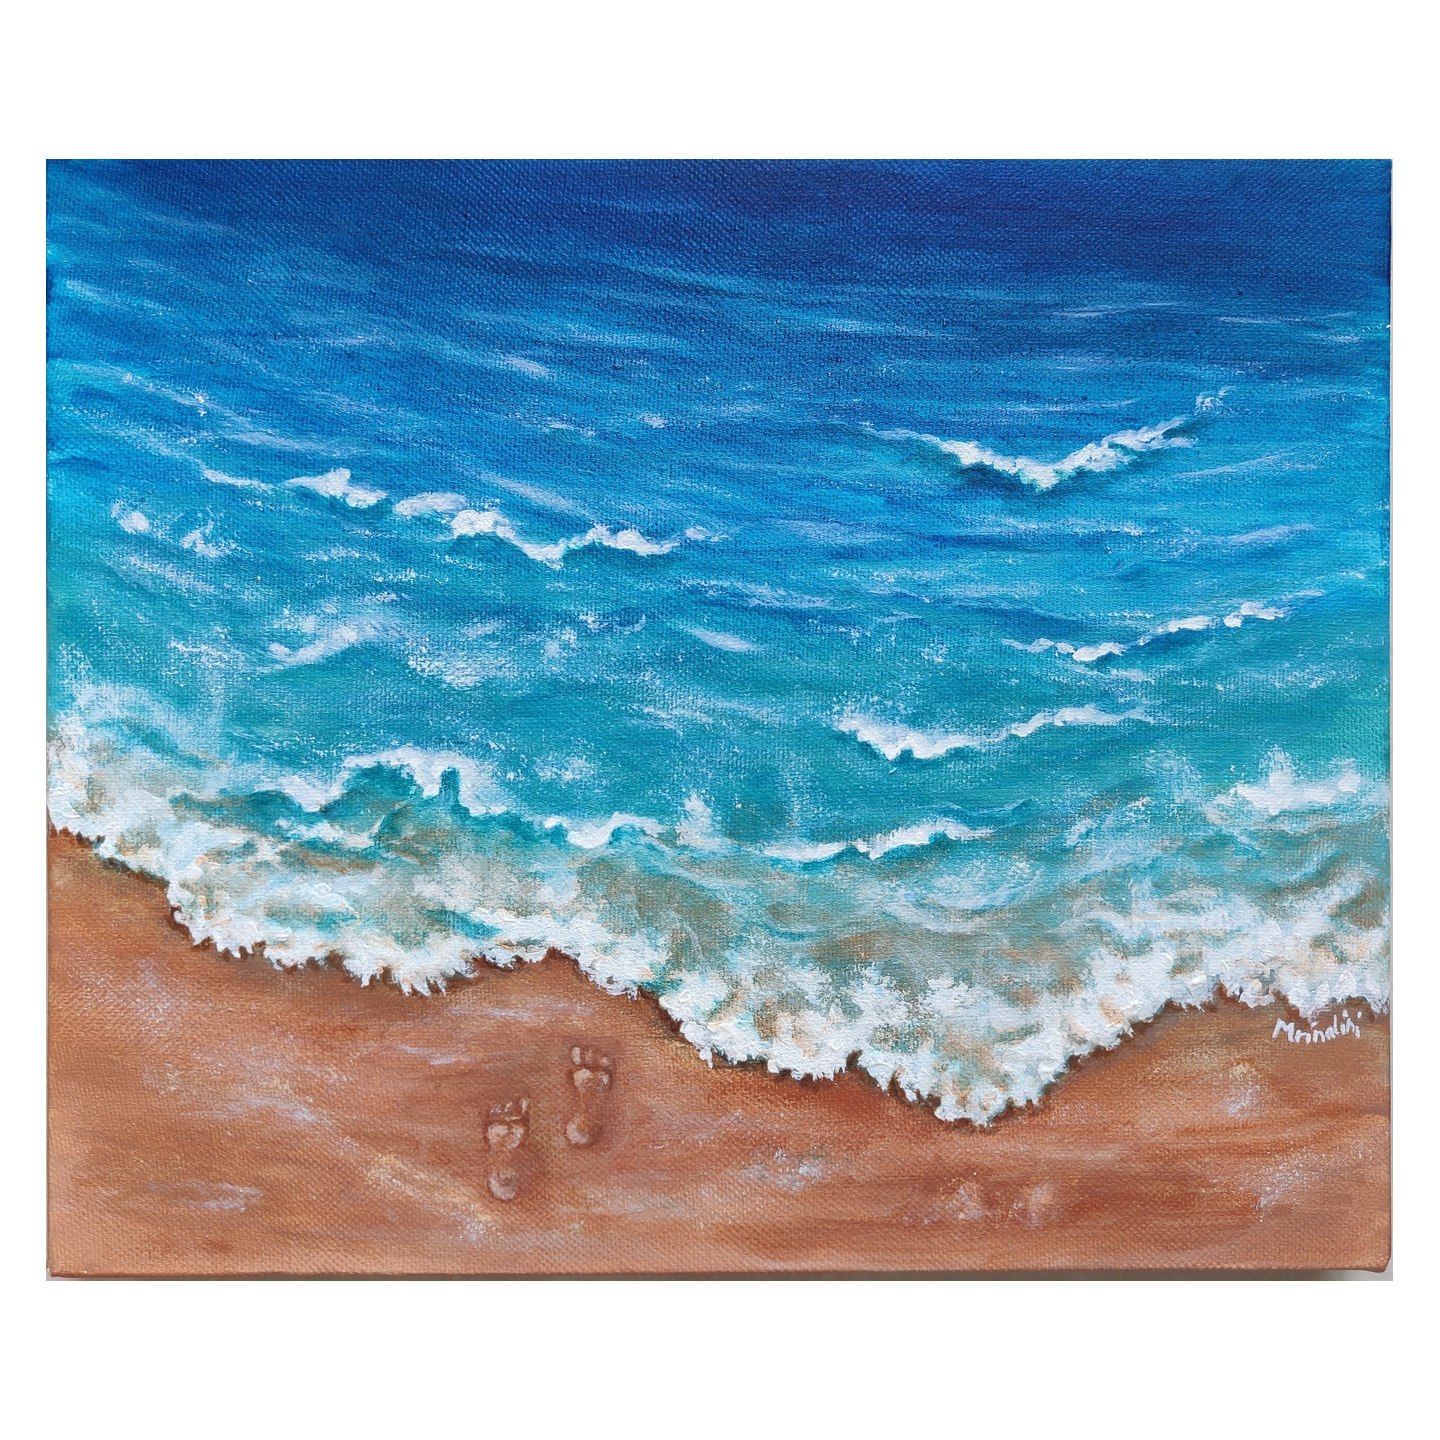 Footprints in the sand ocean painting